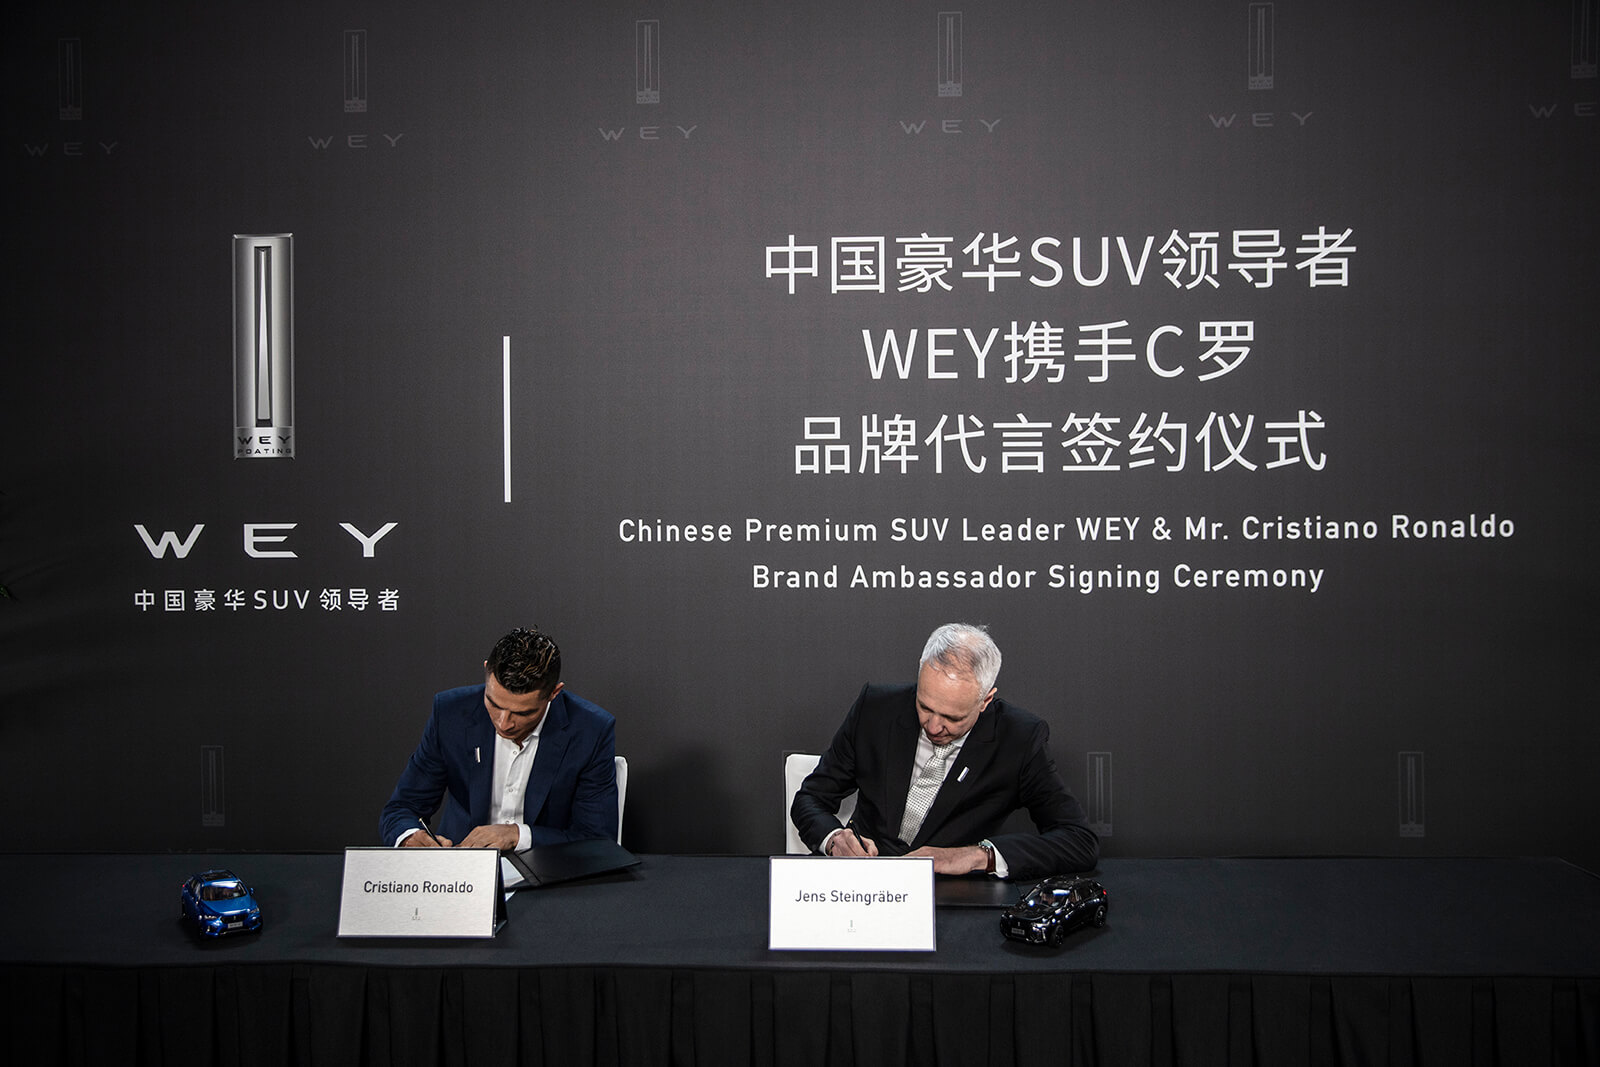 王者聚首 国际足球巨星C罗为中国豪华SUV领导者WEY品牌代言